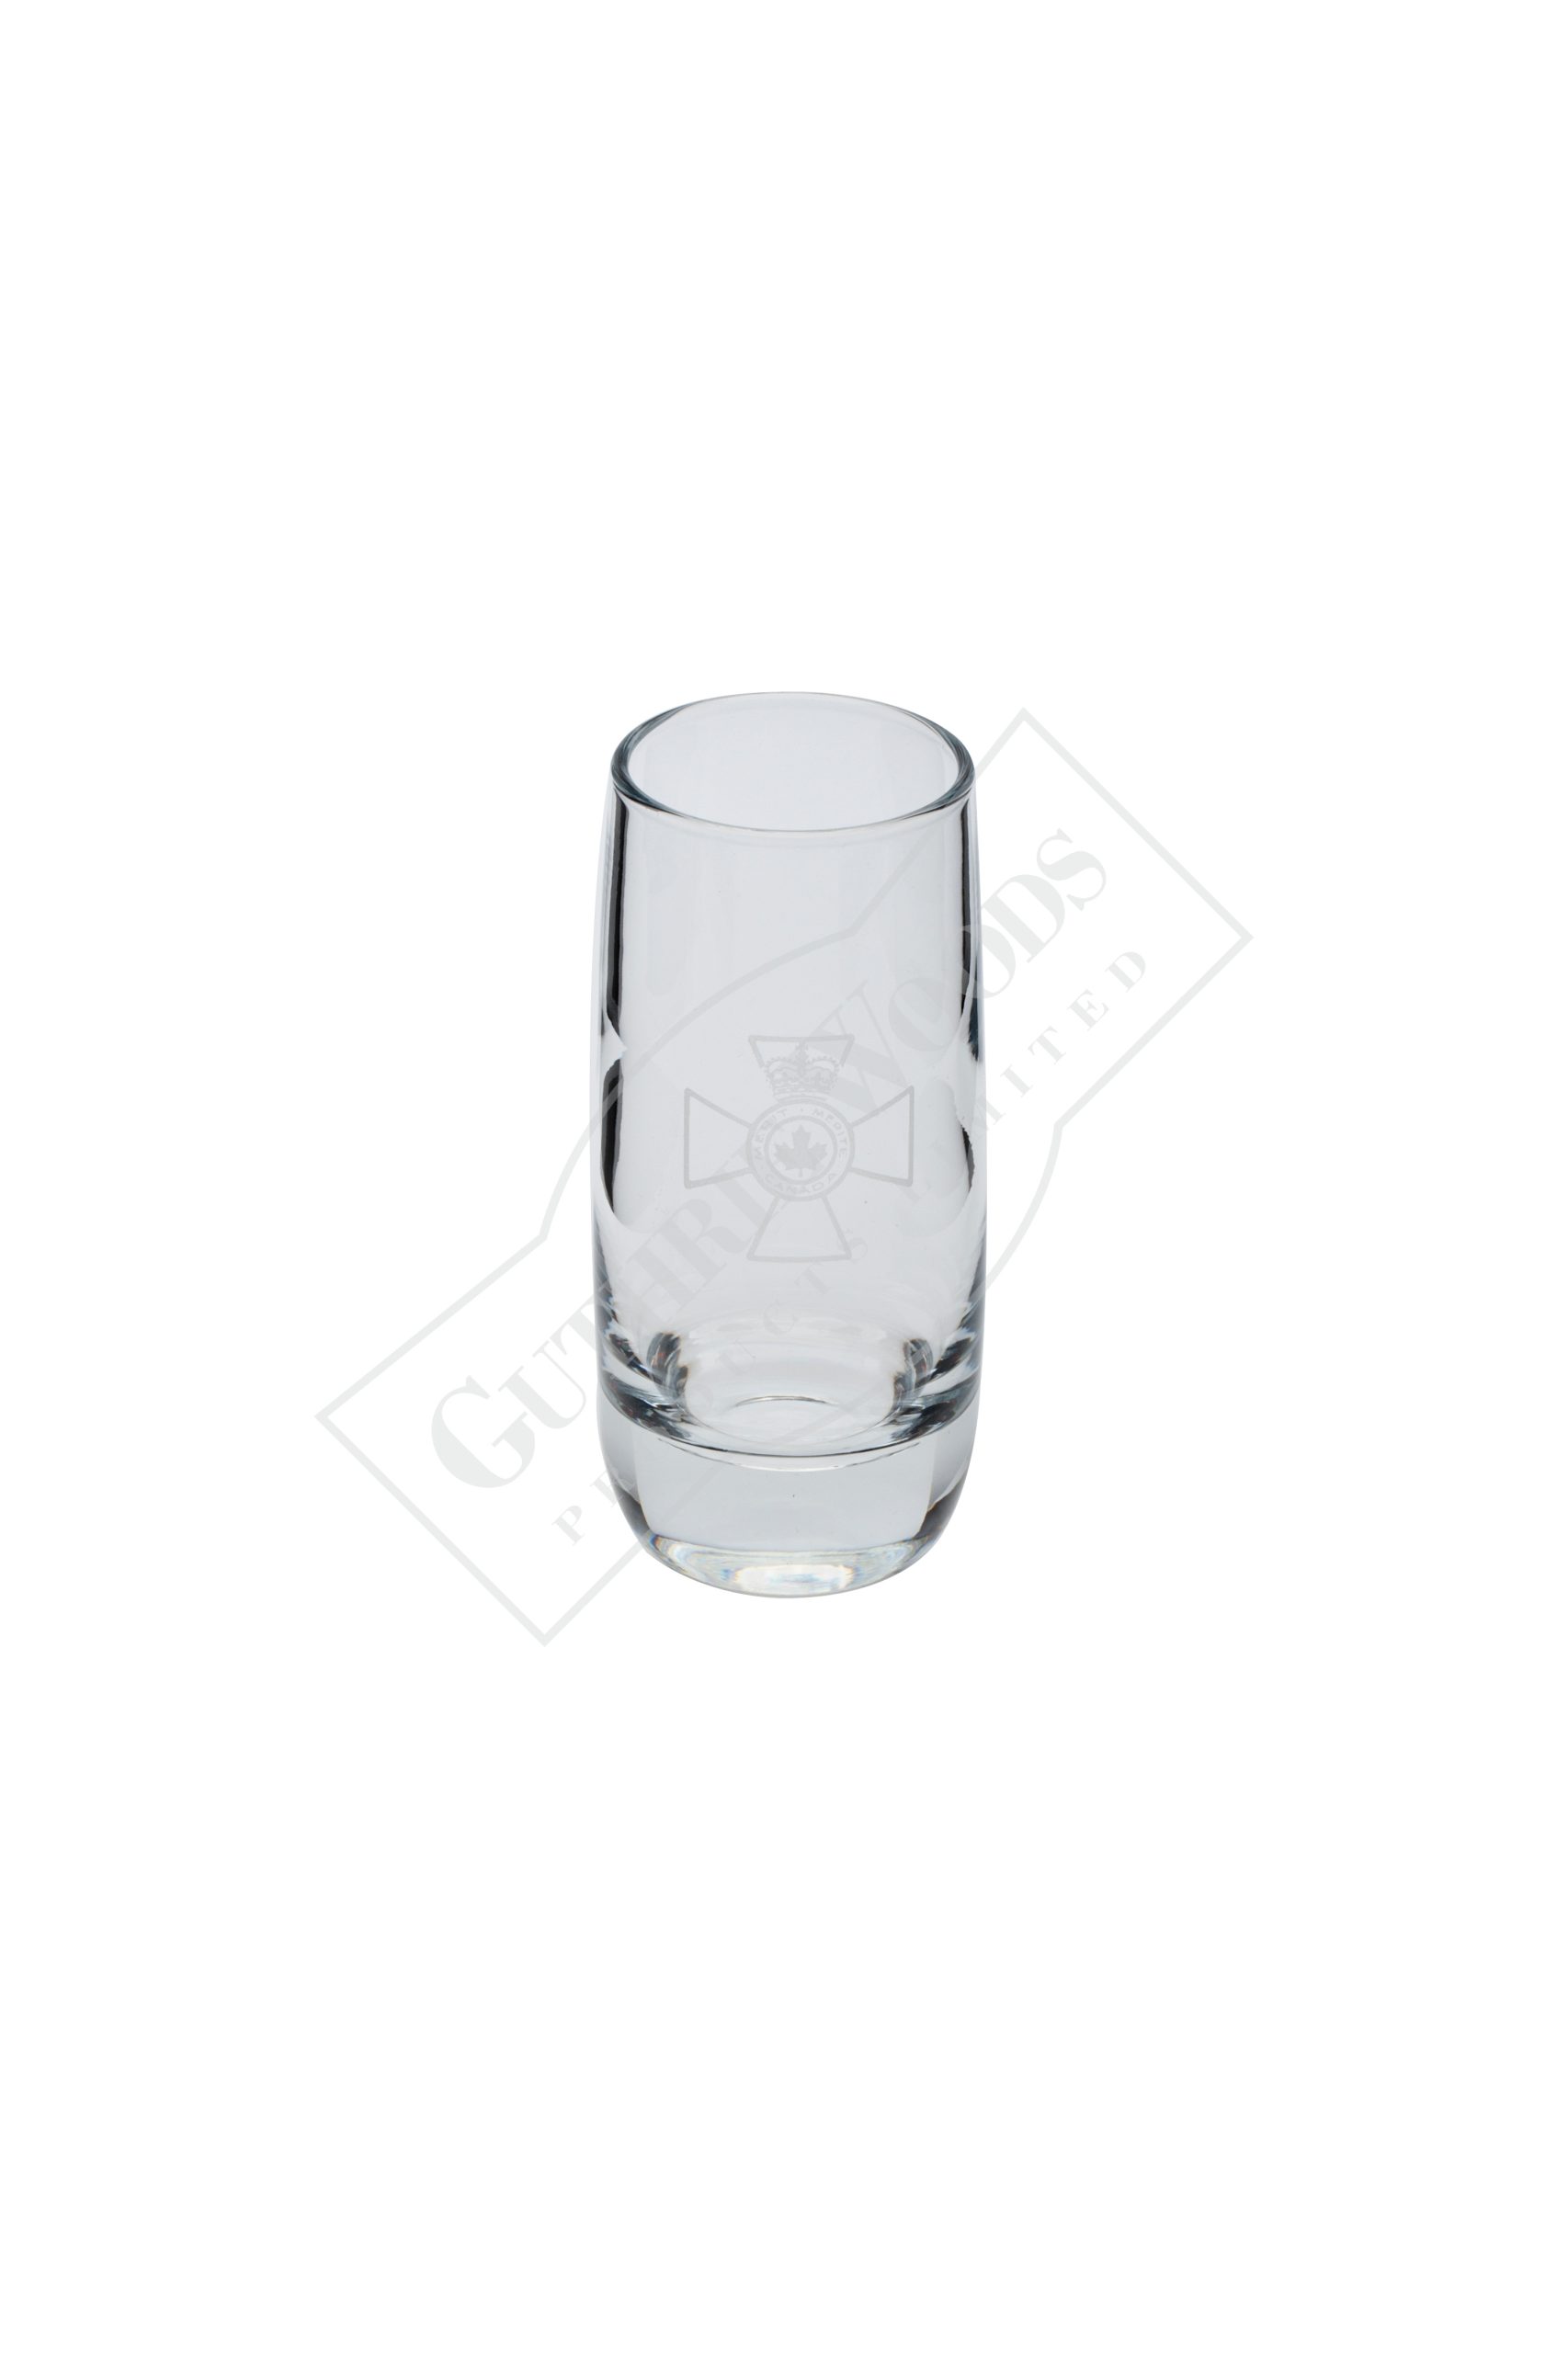 #296-G2 shot glass